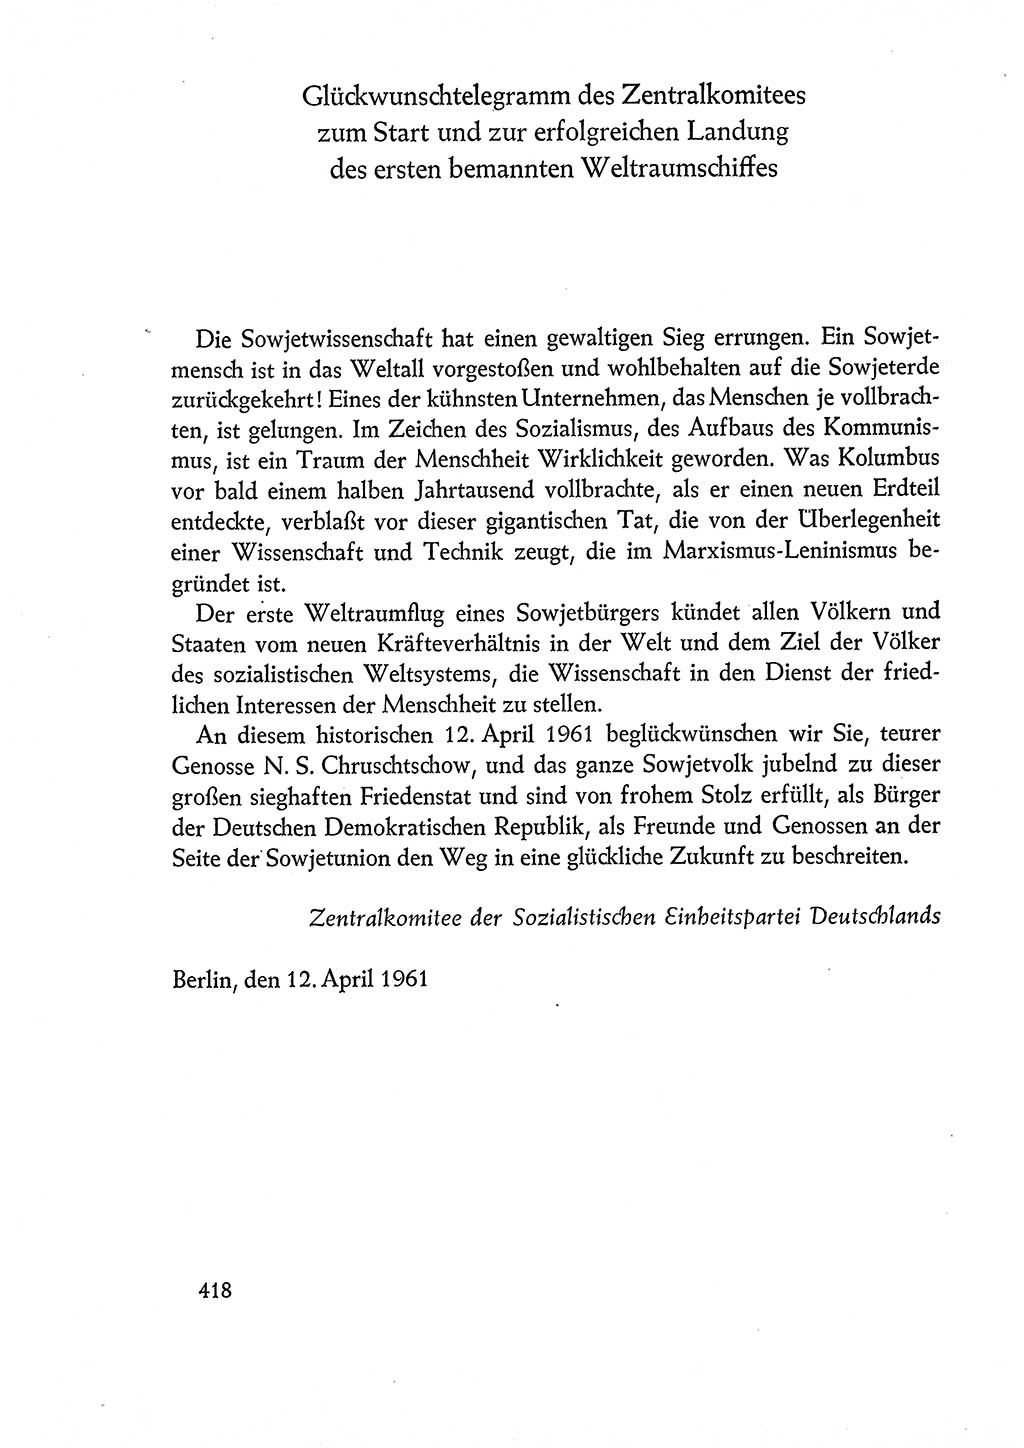 Dokumente der Sozialistischen Einheitspartei Deutschlands (SED) [Deutsche Demokratische Republik (DDR)] 1960-1961, Seite 418 (Dok. SED DDR 1960-1961, S. 418)